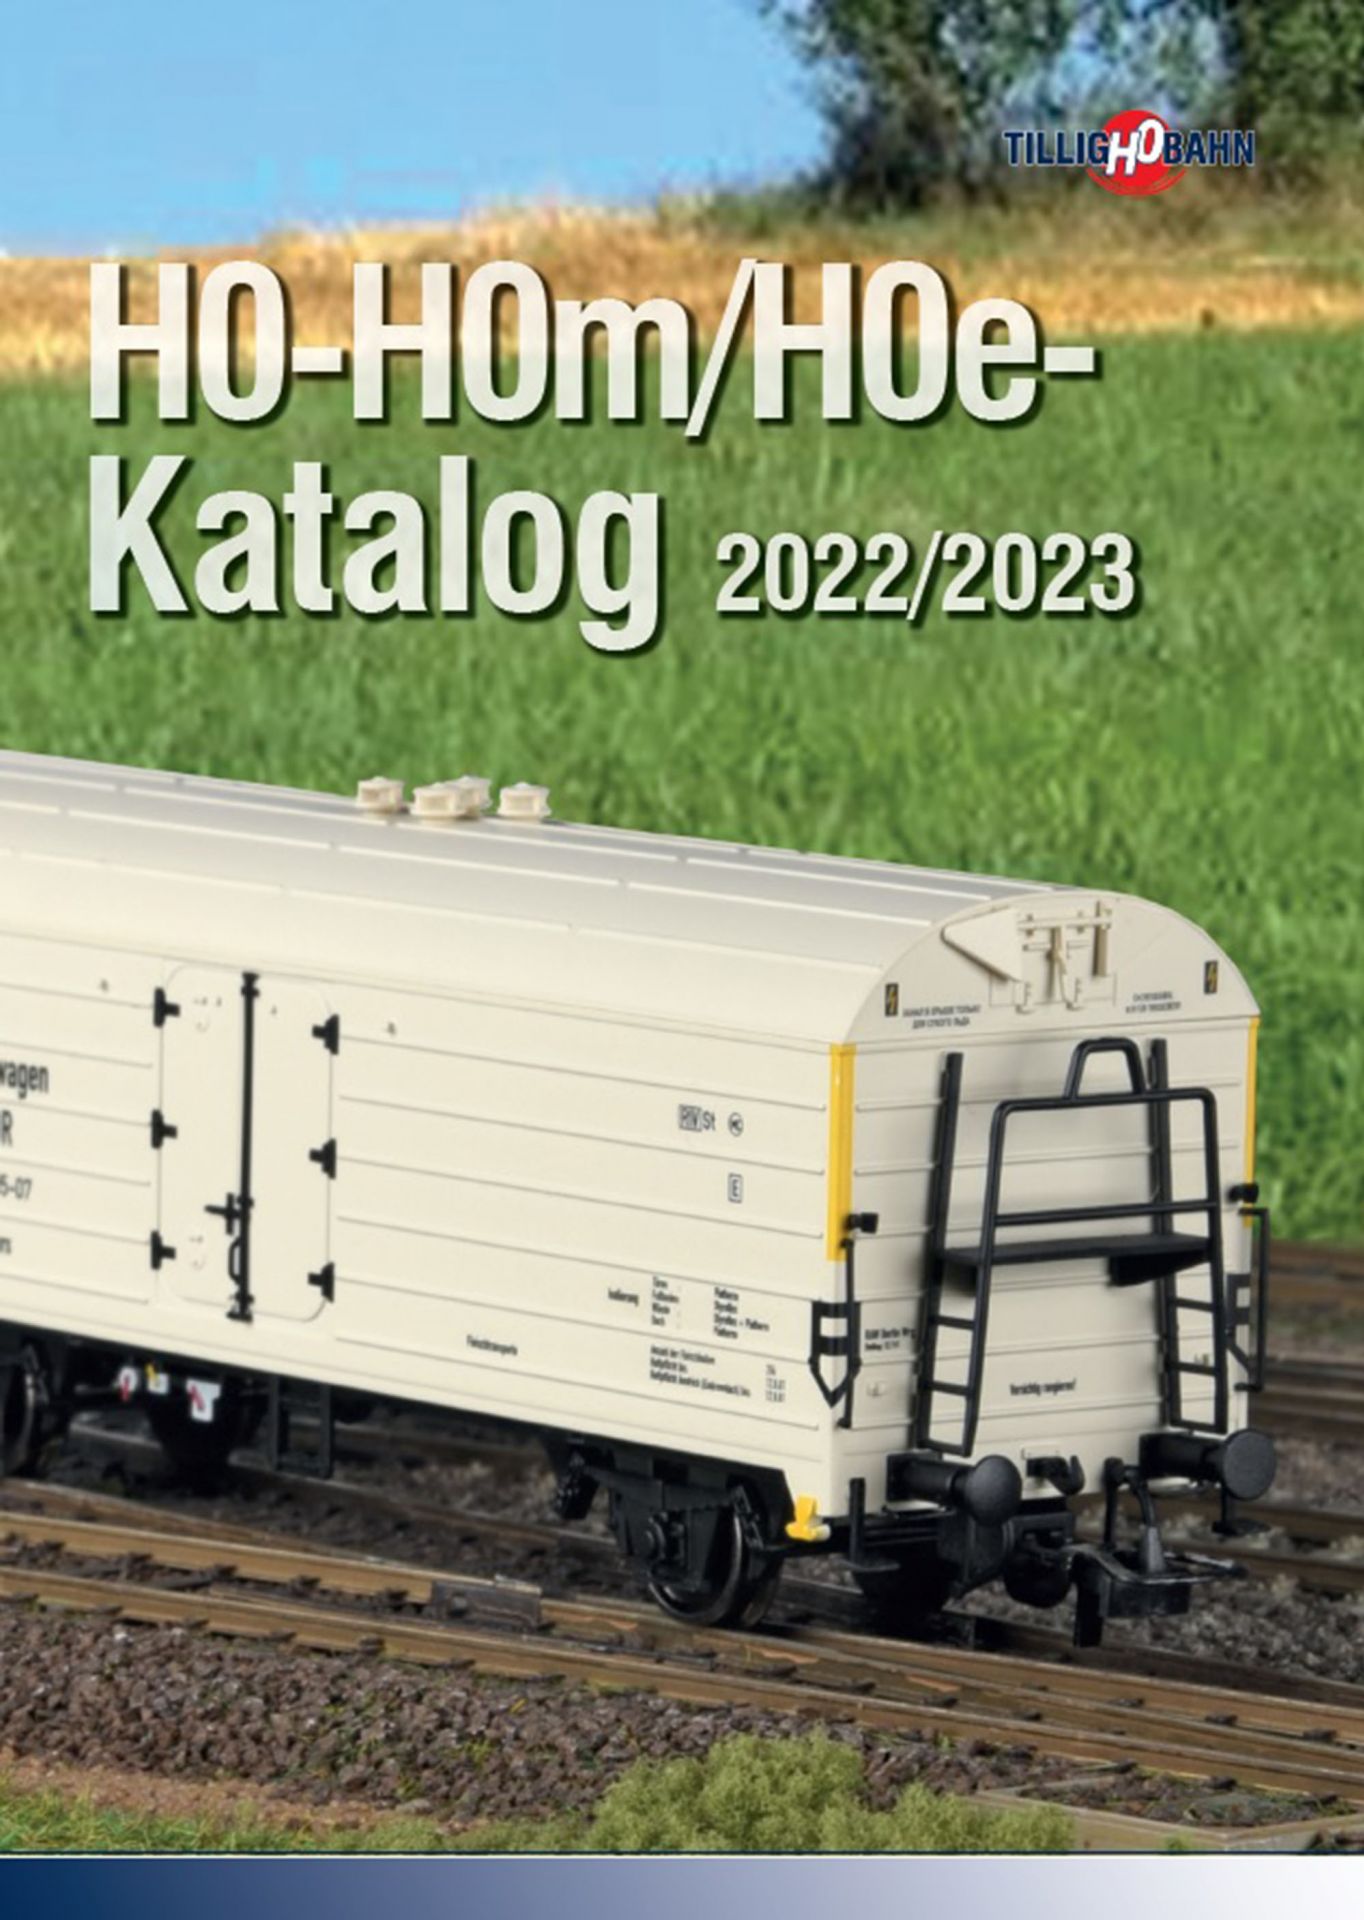 09593 | TILLIG H0-H0m/H0e-Katalog 2022/2023